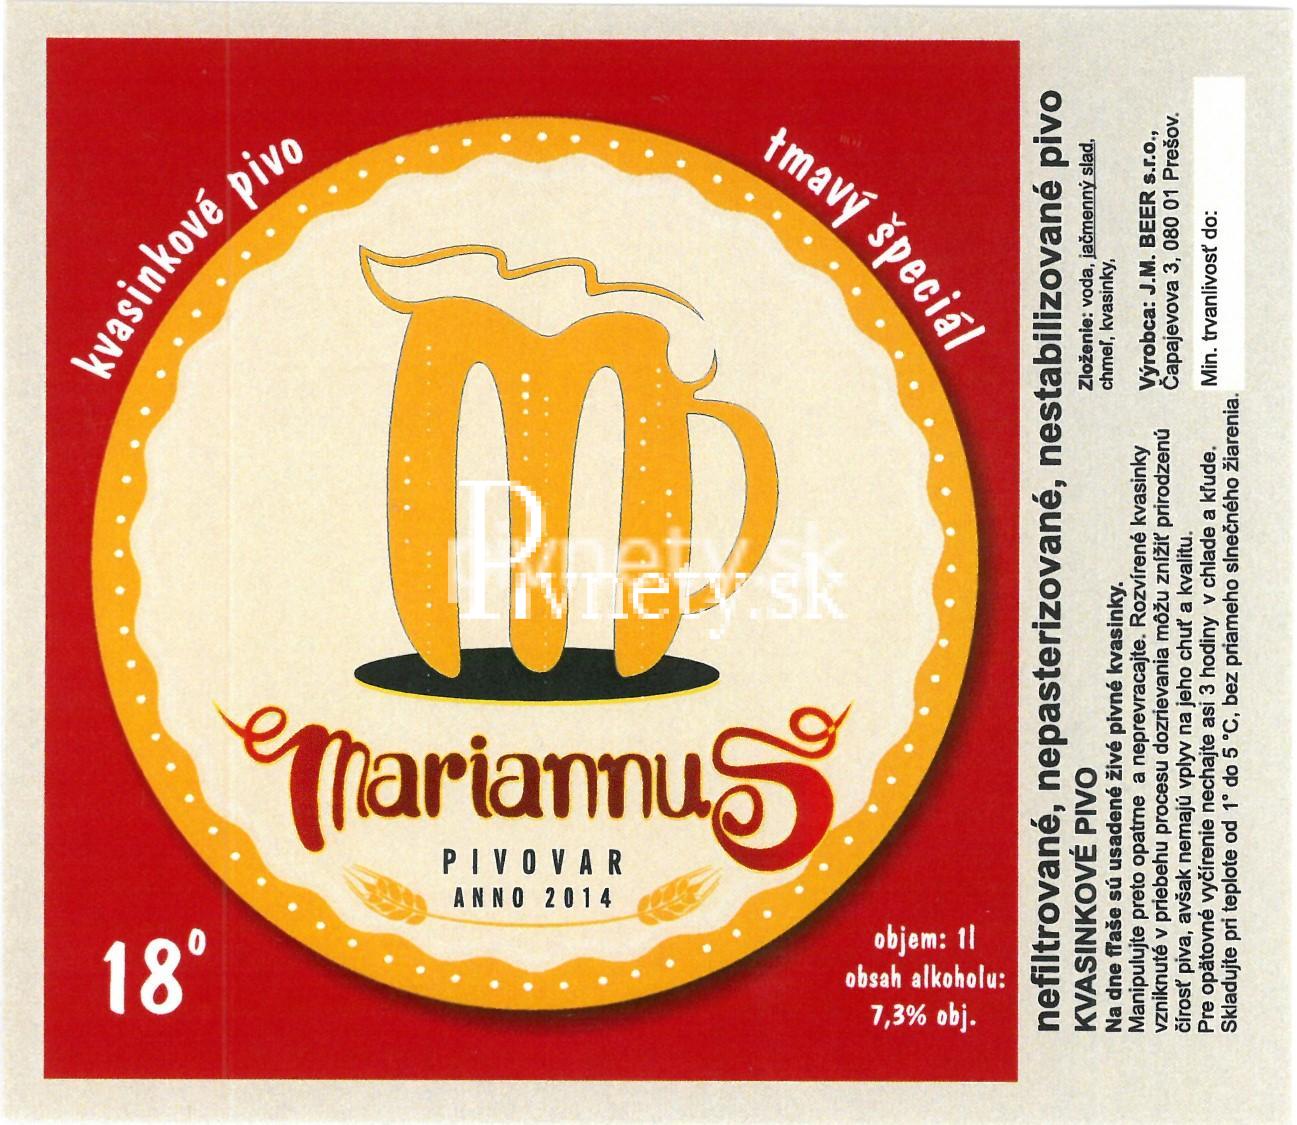 Pivovar Mariannus - Tmavý špeciál 18°